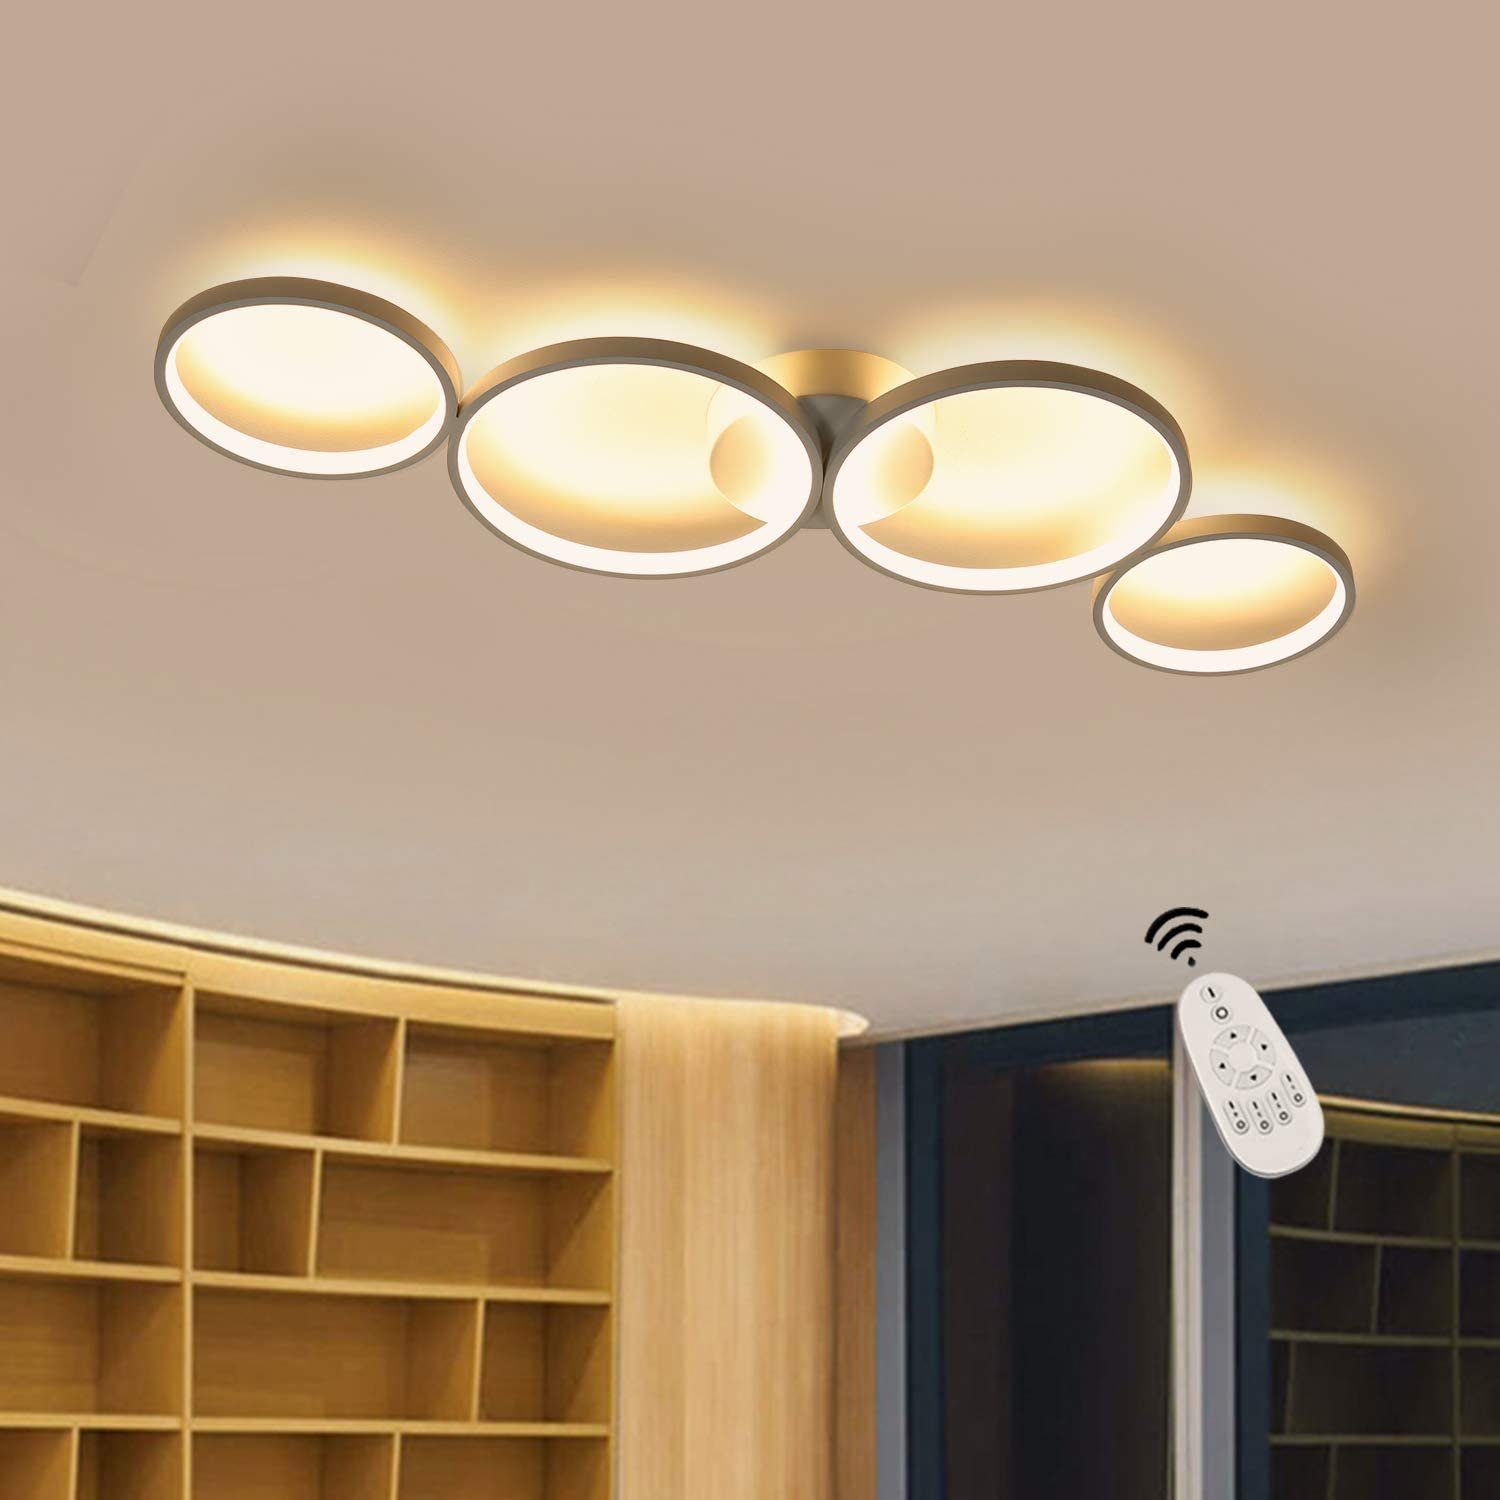 LED Panel Decken Leuchten Büro Flur Lampe Wohn Schlaf Zimmer Beleuchtung dimmbar 